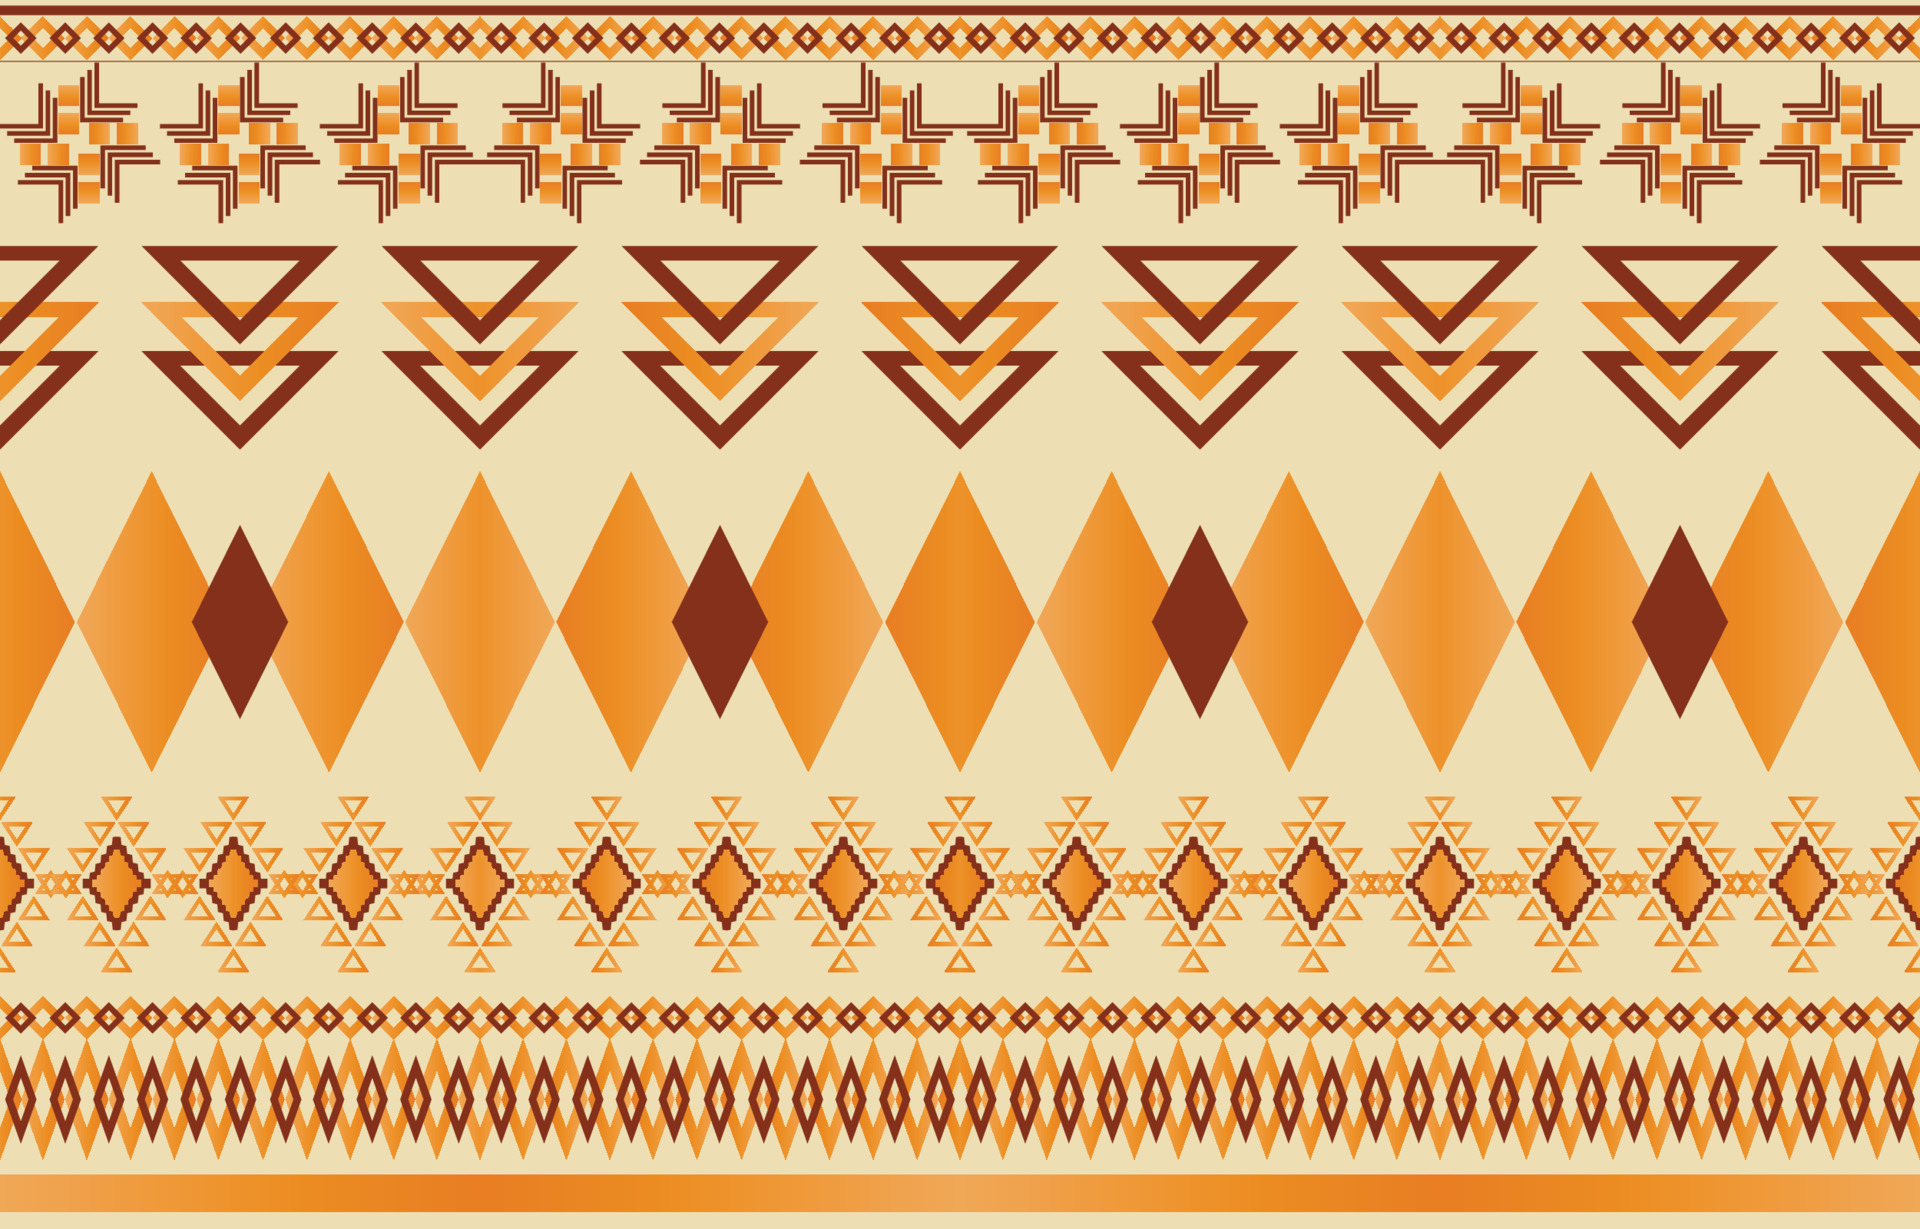 Hãy chiêm ngưỡng mẫu vải bản địa Navajo đầy tính dân tộc và tinh tế, một sự lựa chọn hoàn hảo cho những ai yêu thích phong cách độc đáo và sáng tạo. Hình ảnh liên quan sẽ được mang đến cho bạn những trải nghiệm mới lạ và cực kì đáng nhớ.